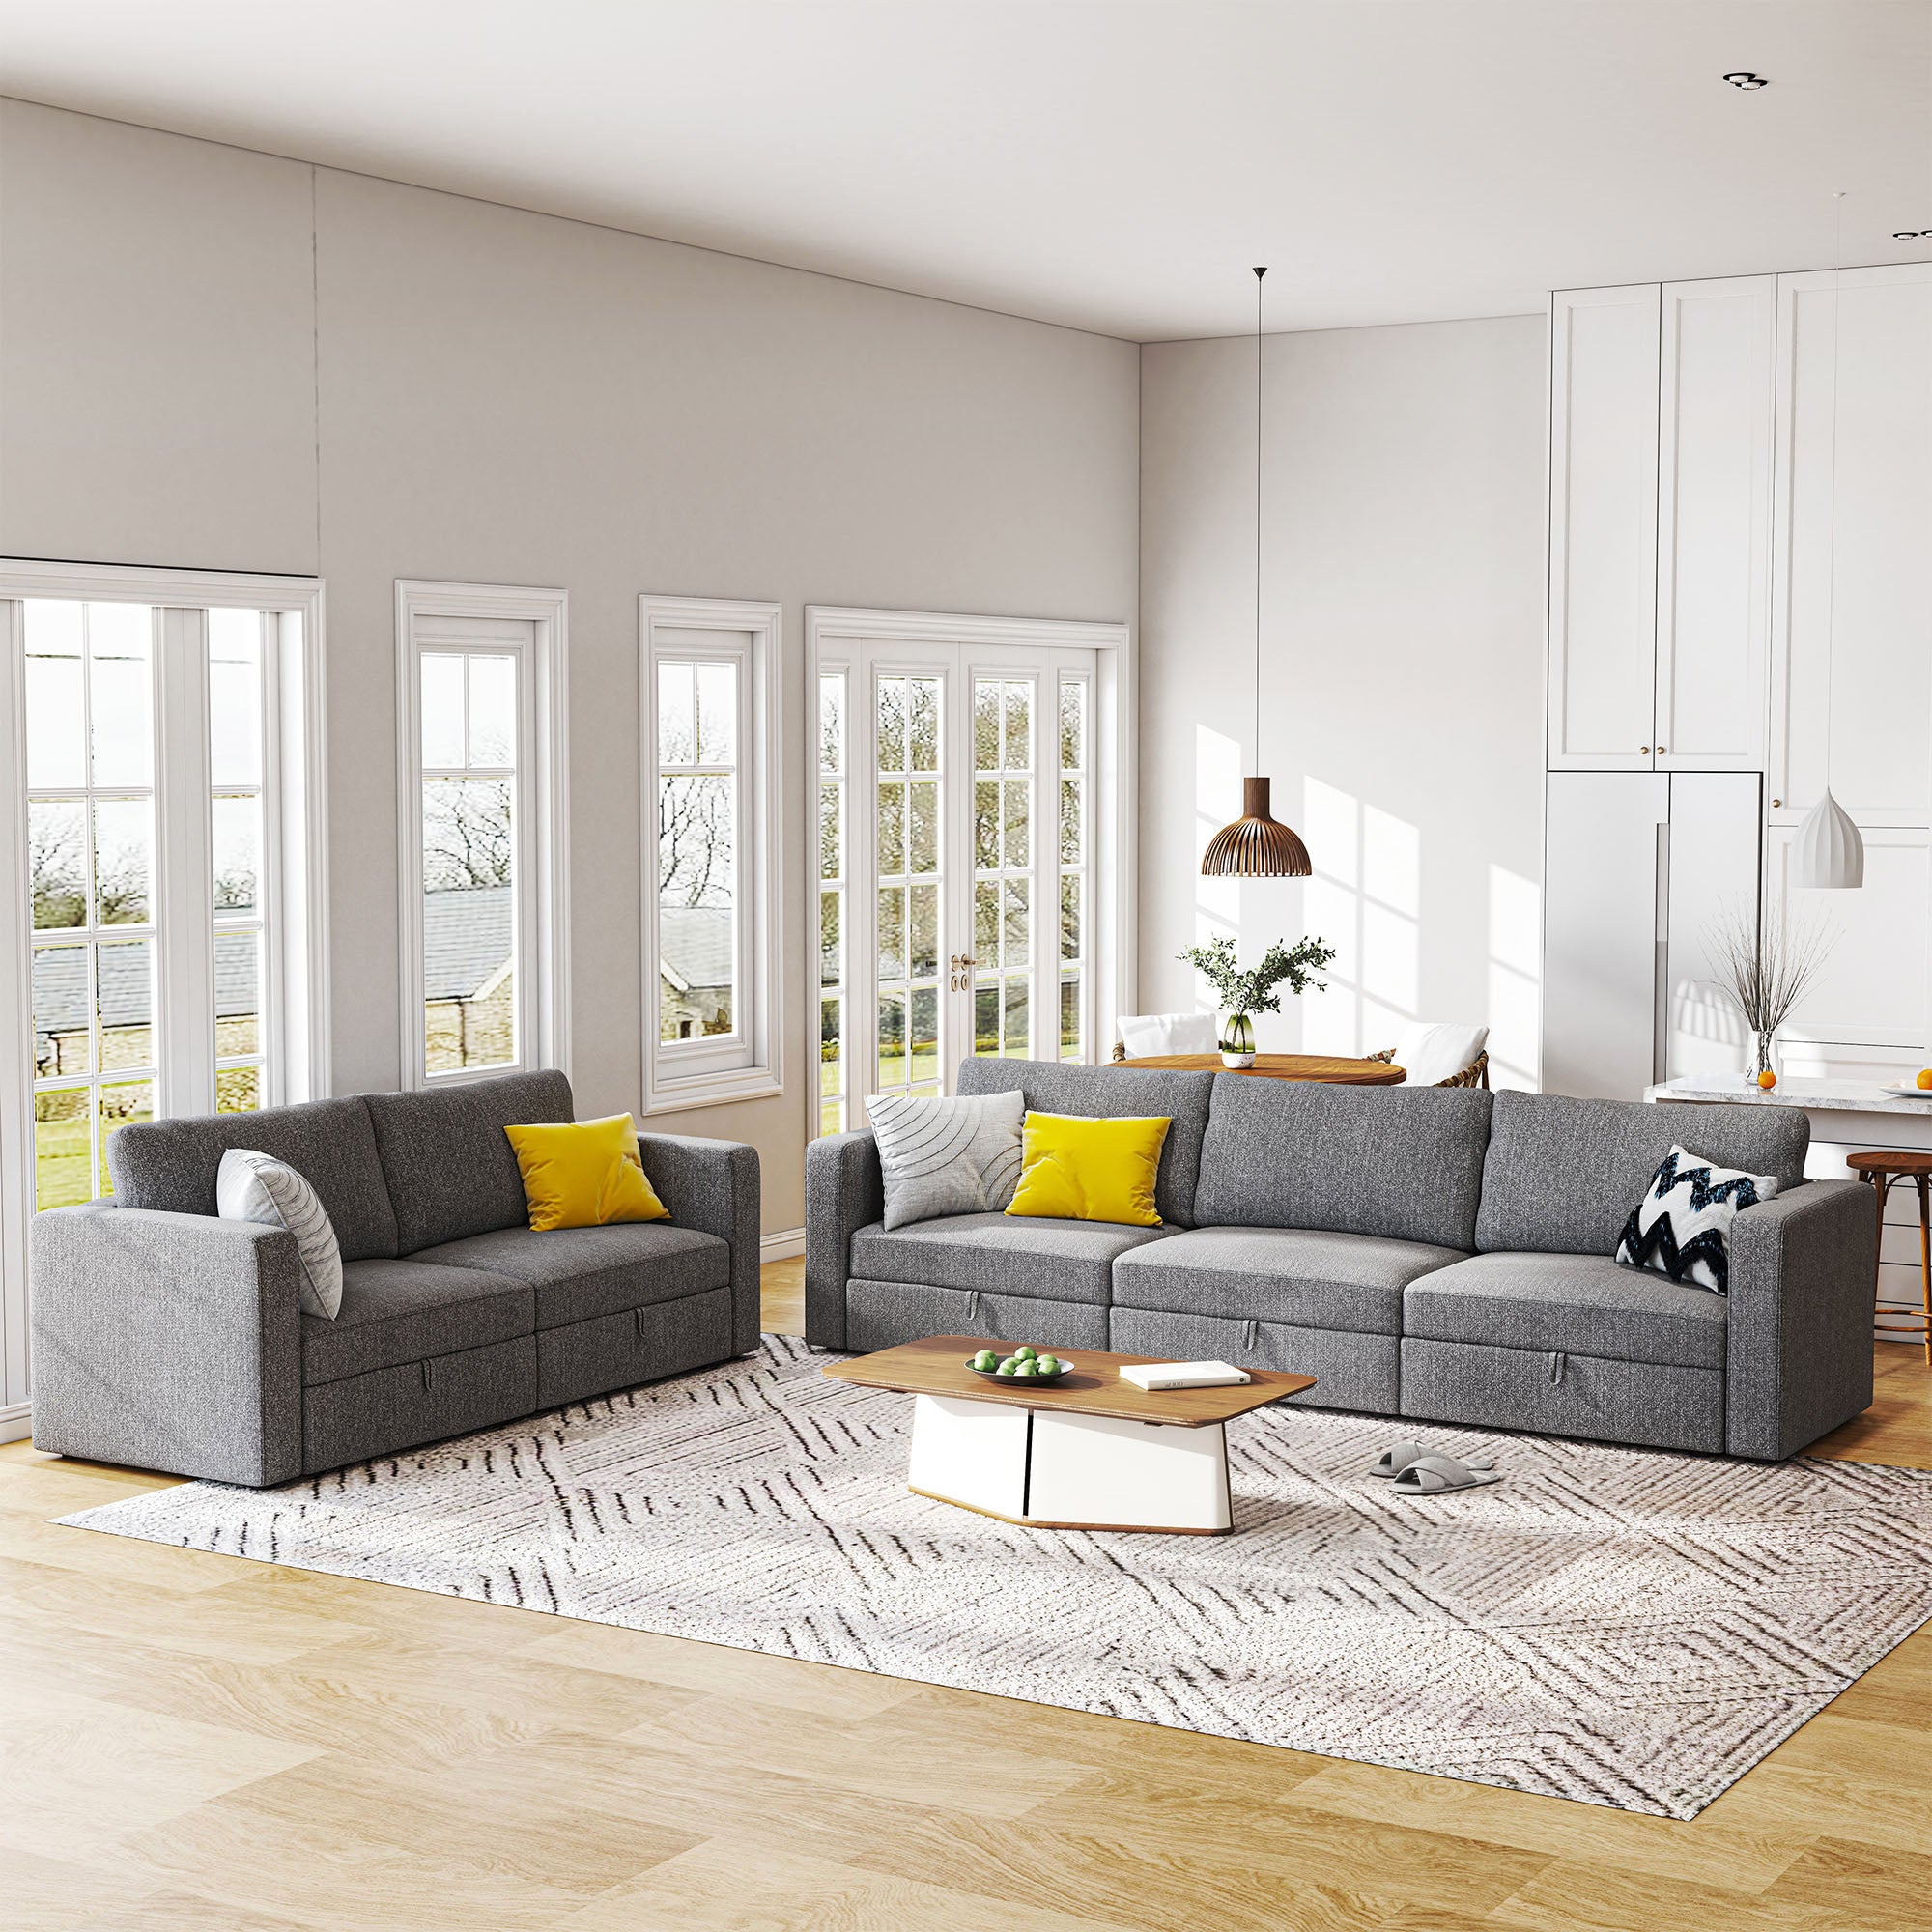 HONBAY Fabric Spacious Modular 2+3 Sofa Set for Living Room